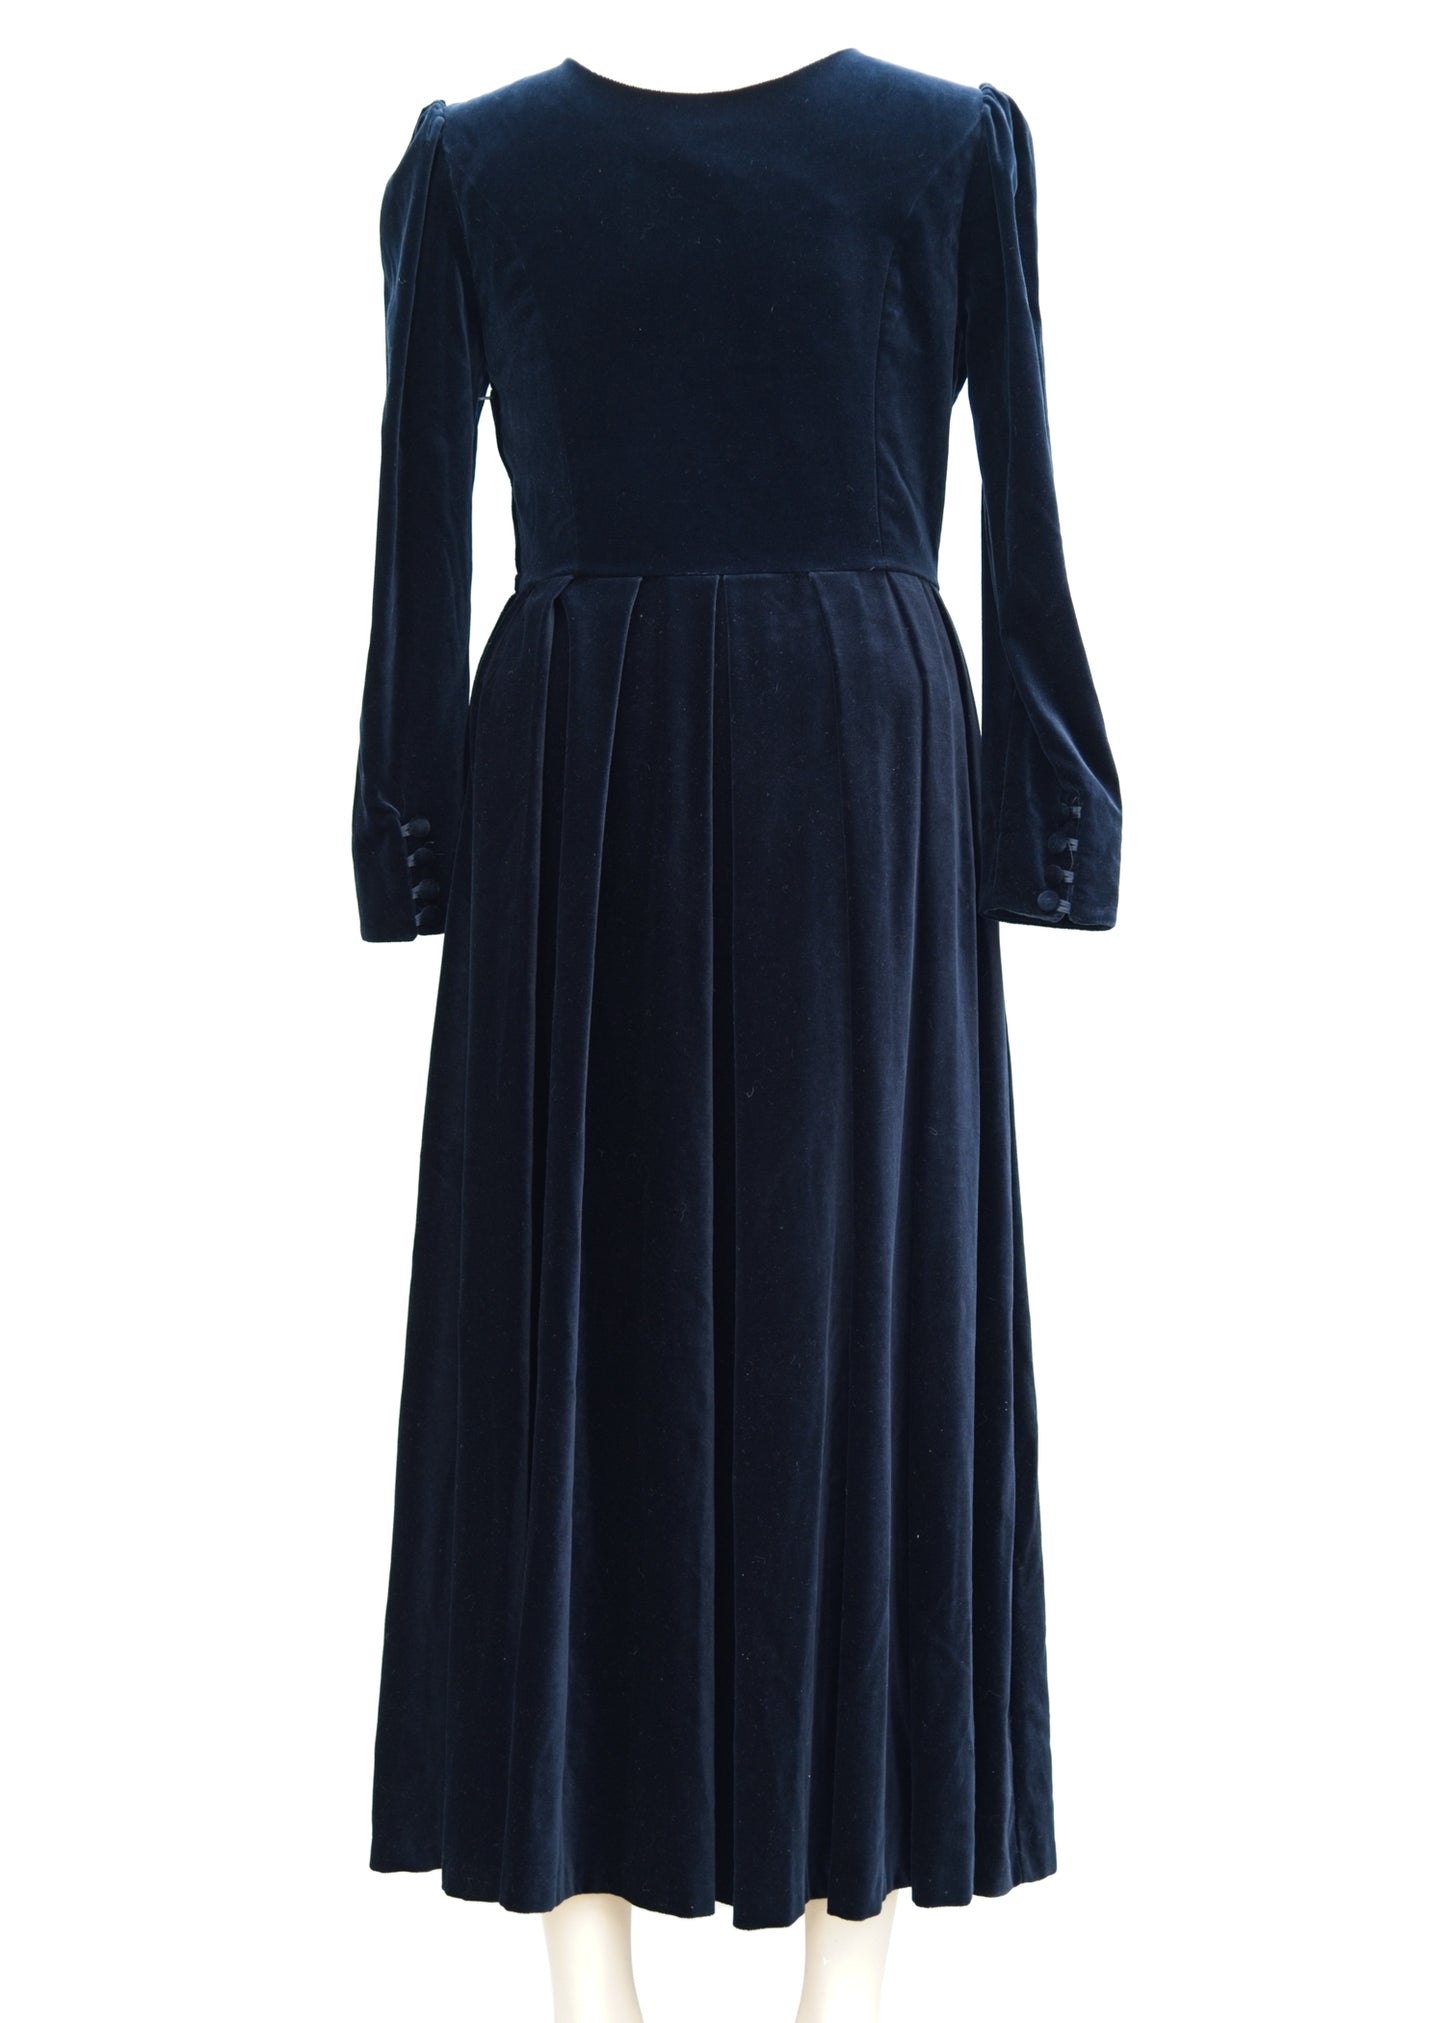 Vintage Laura Ashley Midnight Blue Velvet Long Sleeve Dress • UK 16